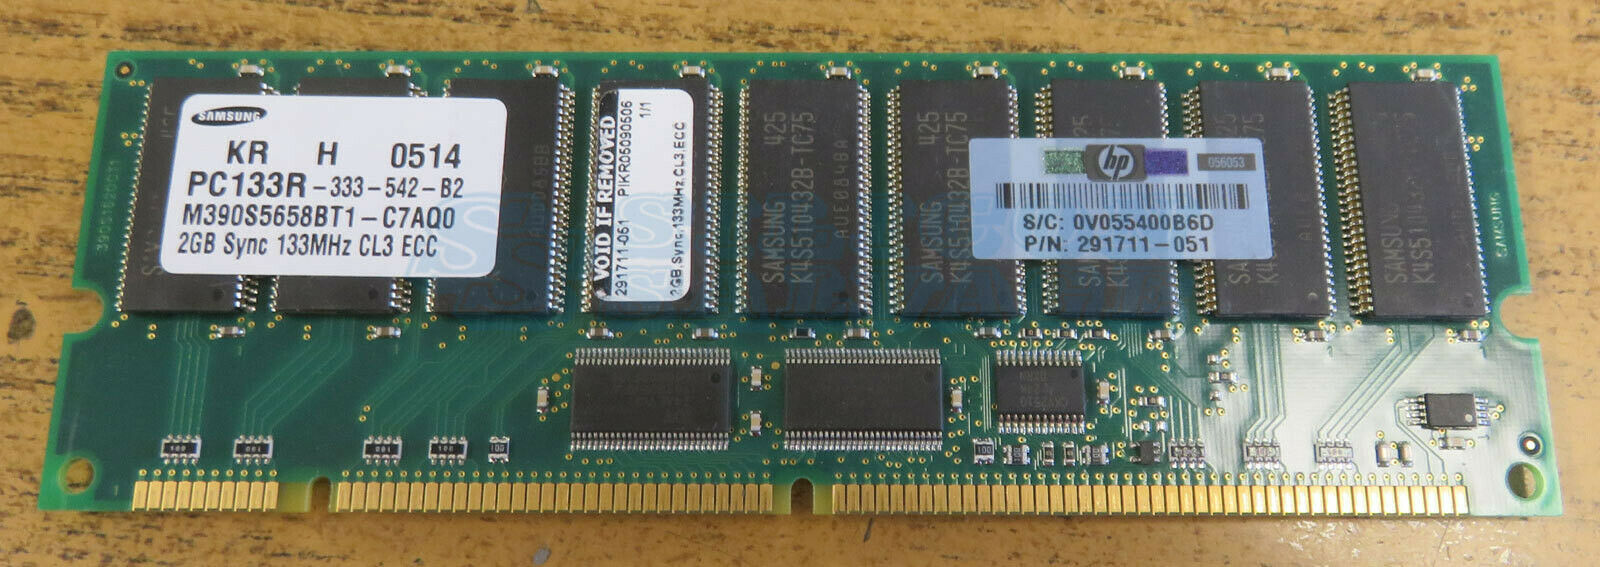 2Gb SDRAM.jpg